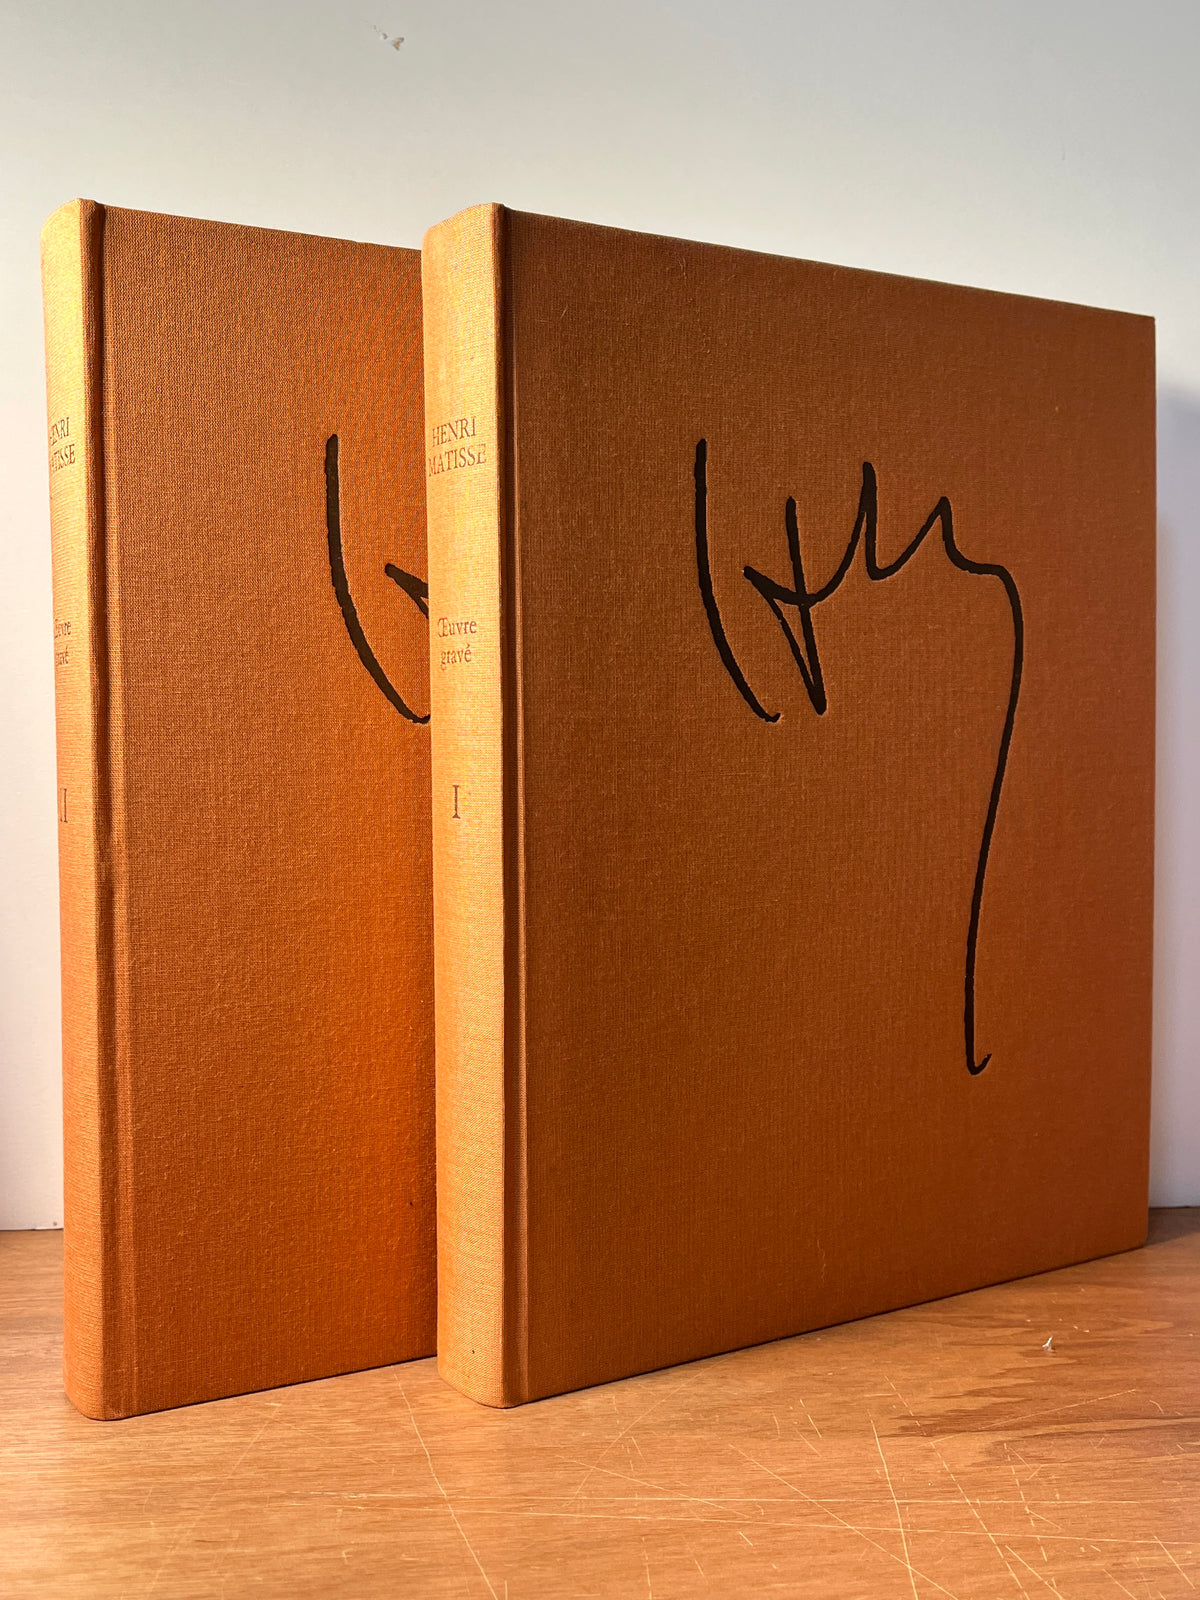 Henri Matisse: Catalogue raisonne de l'oeuvre grave etabli avec la collaboration de Francoise Garnaud, Marguerite and Claude Duthuit, 1983, HC, 2 Vol.